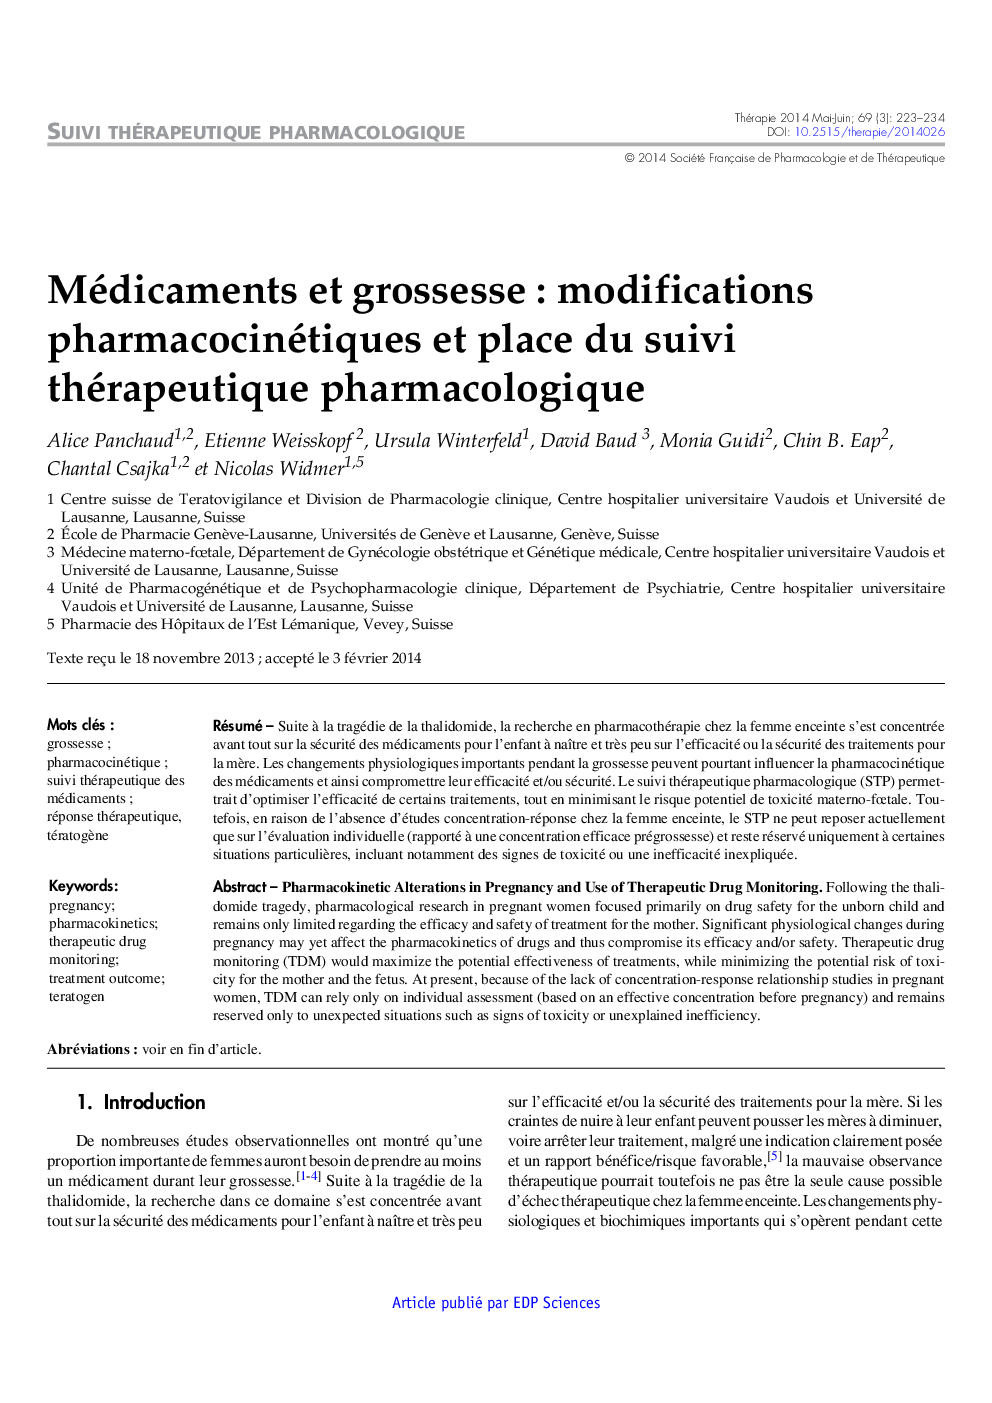 Médicaments et grossesse : modifications pharmacocinétiques et place du suivi thérapeutique pharmacologique